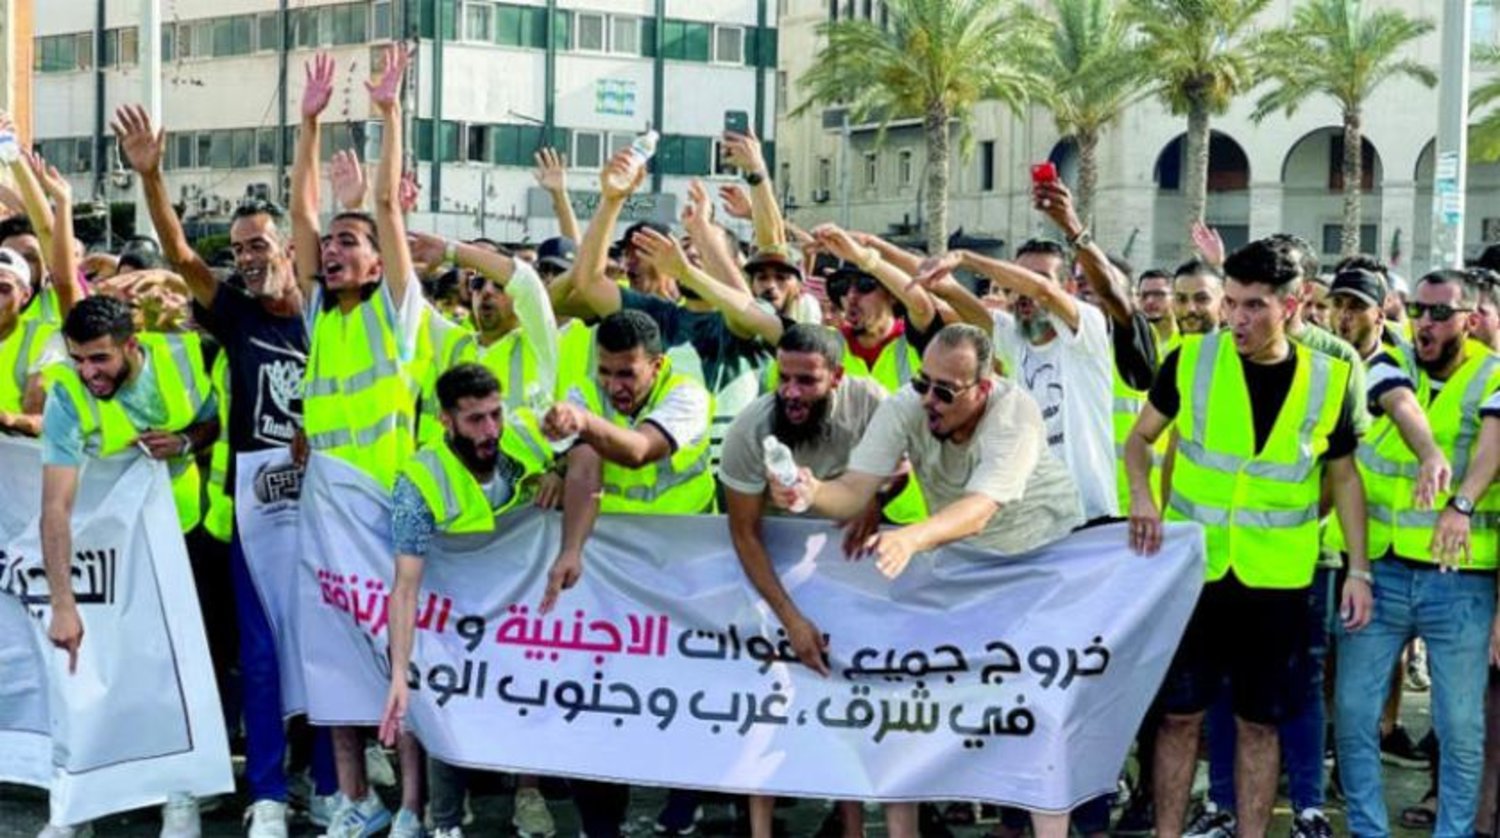 Trablus’un merkezinde düzenlenen protesto gösterisinde ‘Tüm yabancı güçler ülkenin doğusundan ve batısından ayrılsın’ yazılı bir pankart taşıyan Libyalılar (Reuters)